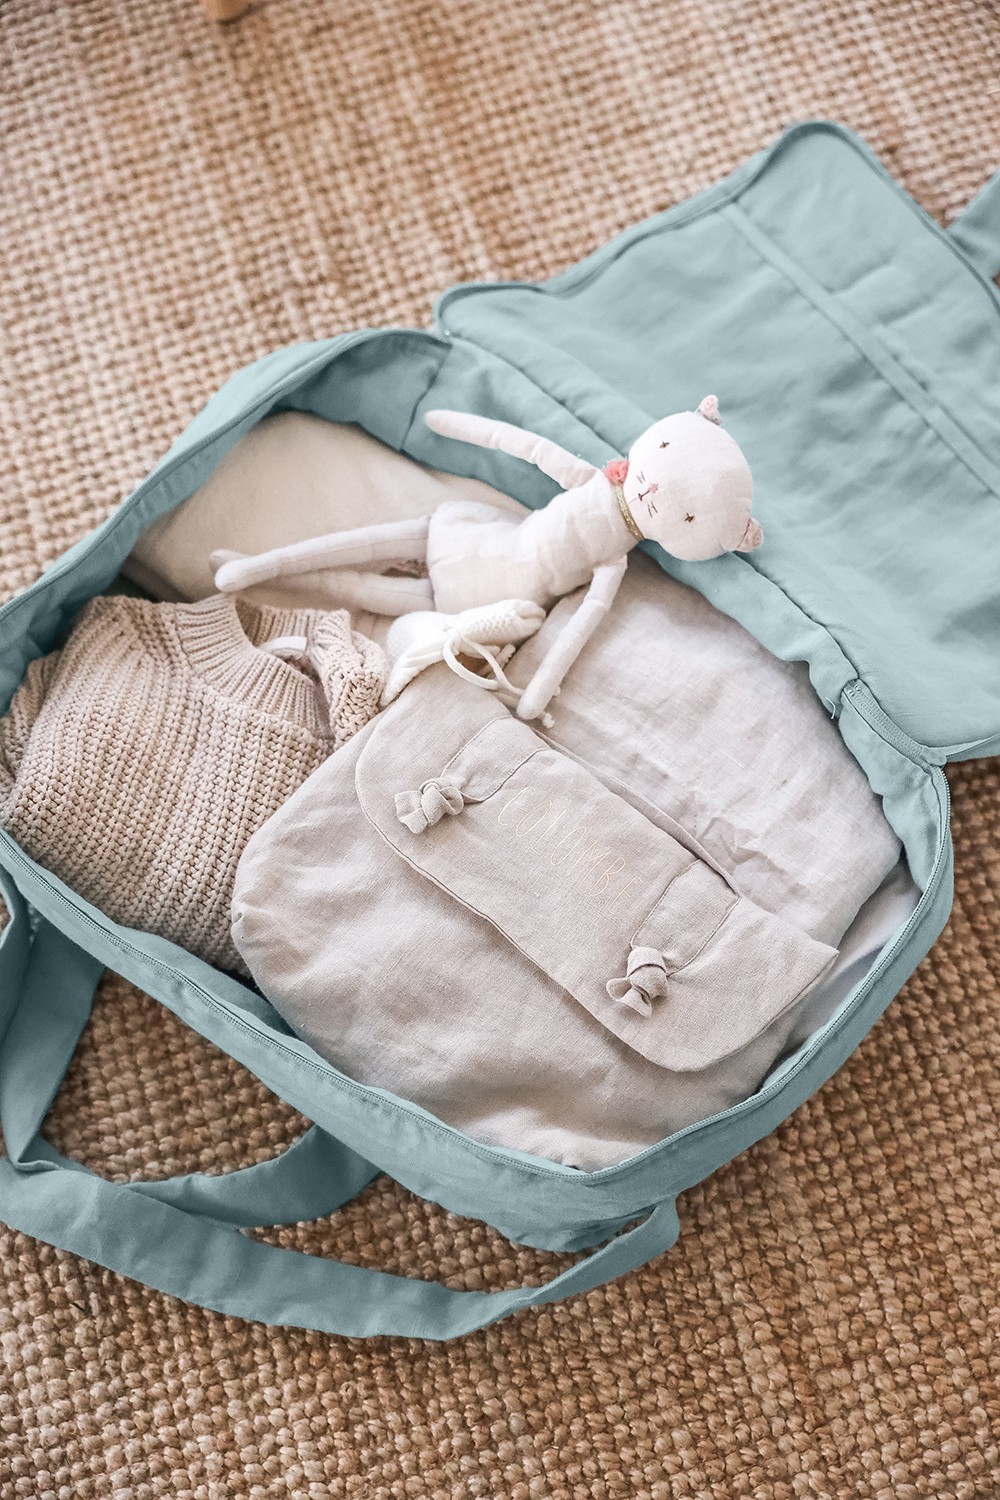 Sac voyage, sac weekend, valise de maternité